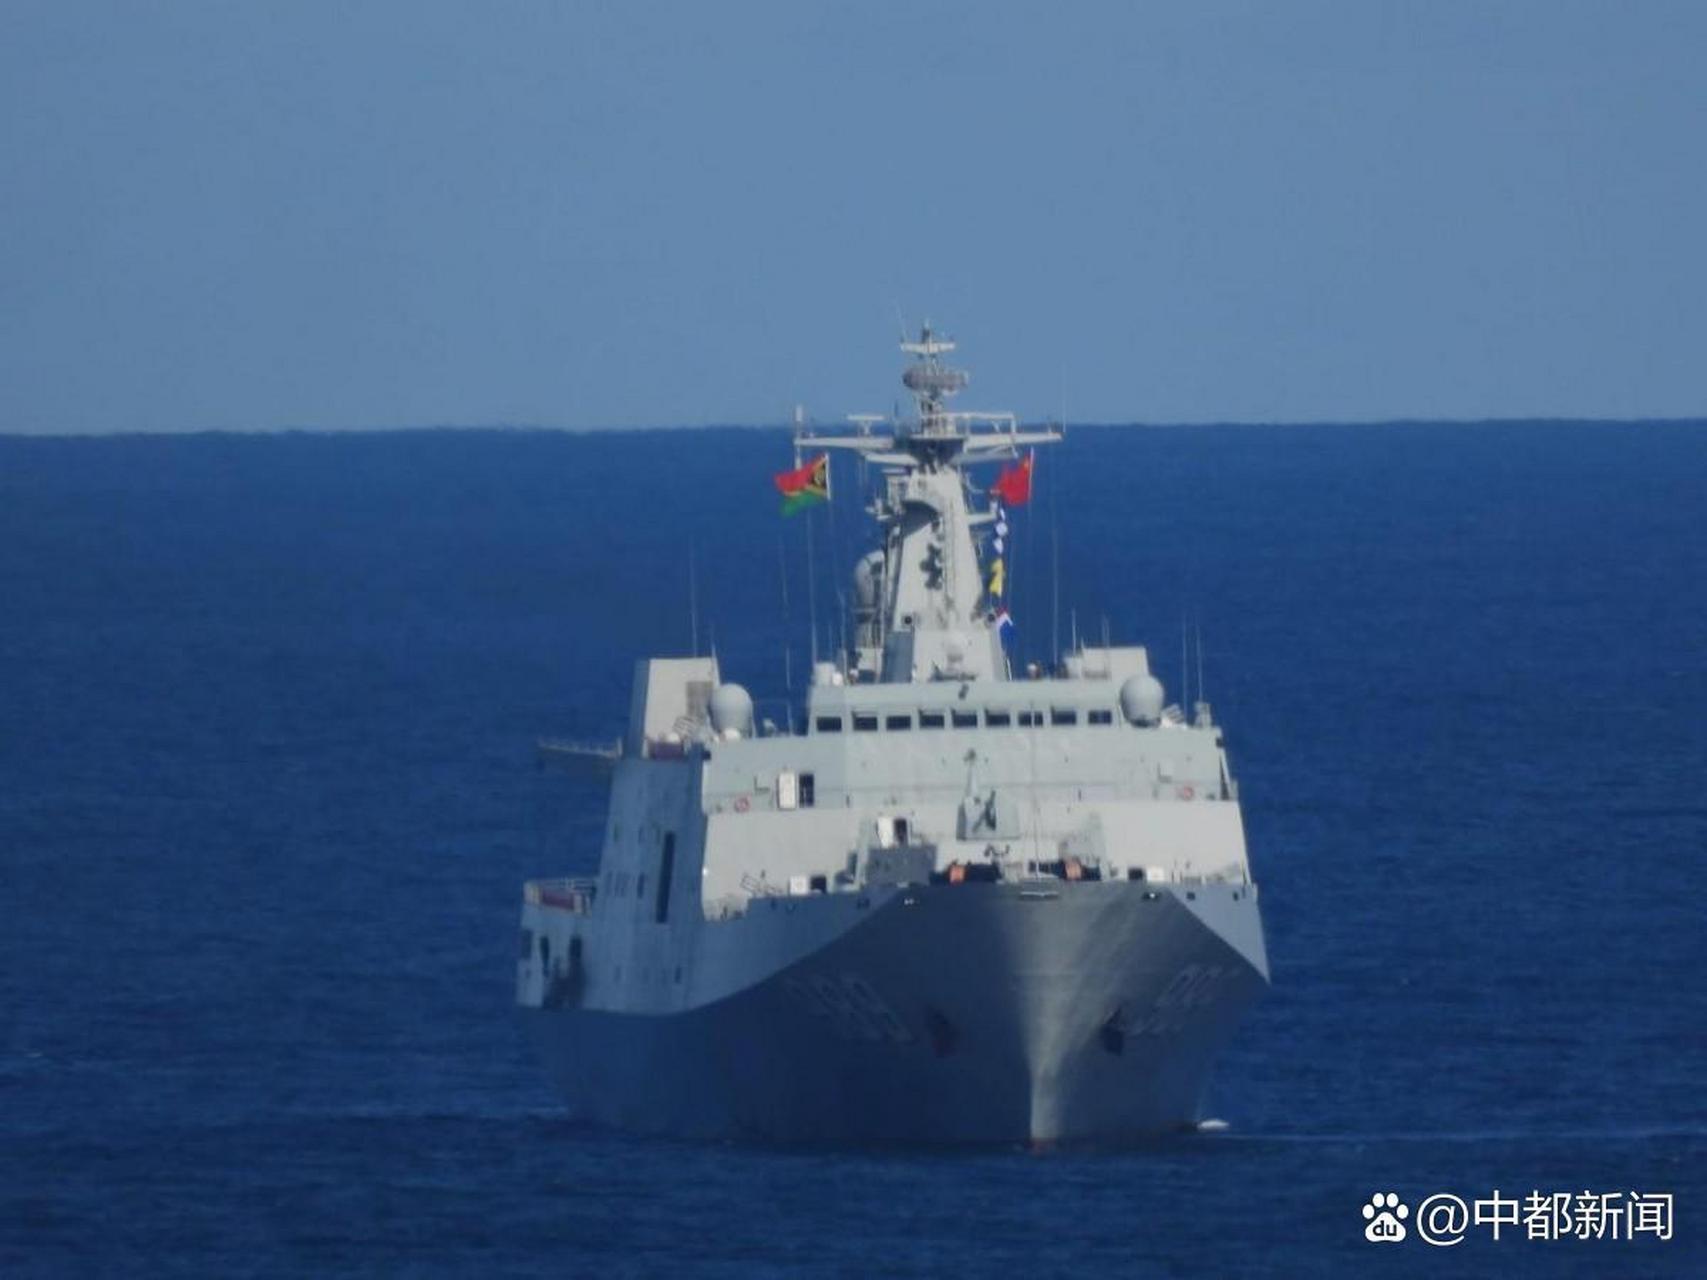 据外媒近日披露的一则消息,解放军的071型船坞登陆舰已经前往南太平洋